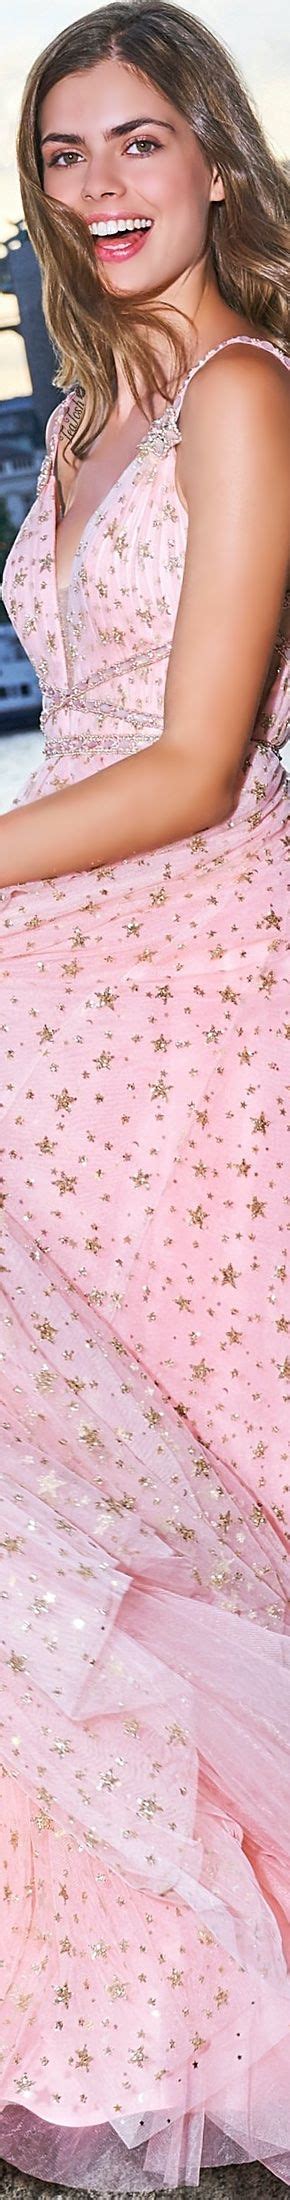 téa tosh sherri hill sherrihill teatosh colorful dresses fashion pink fashion